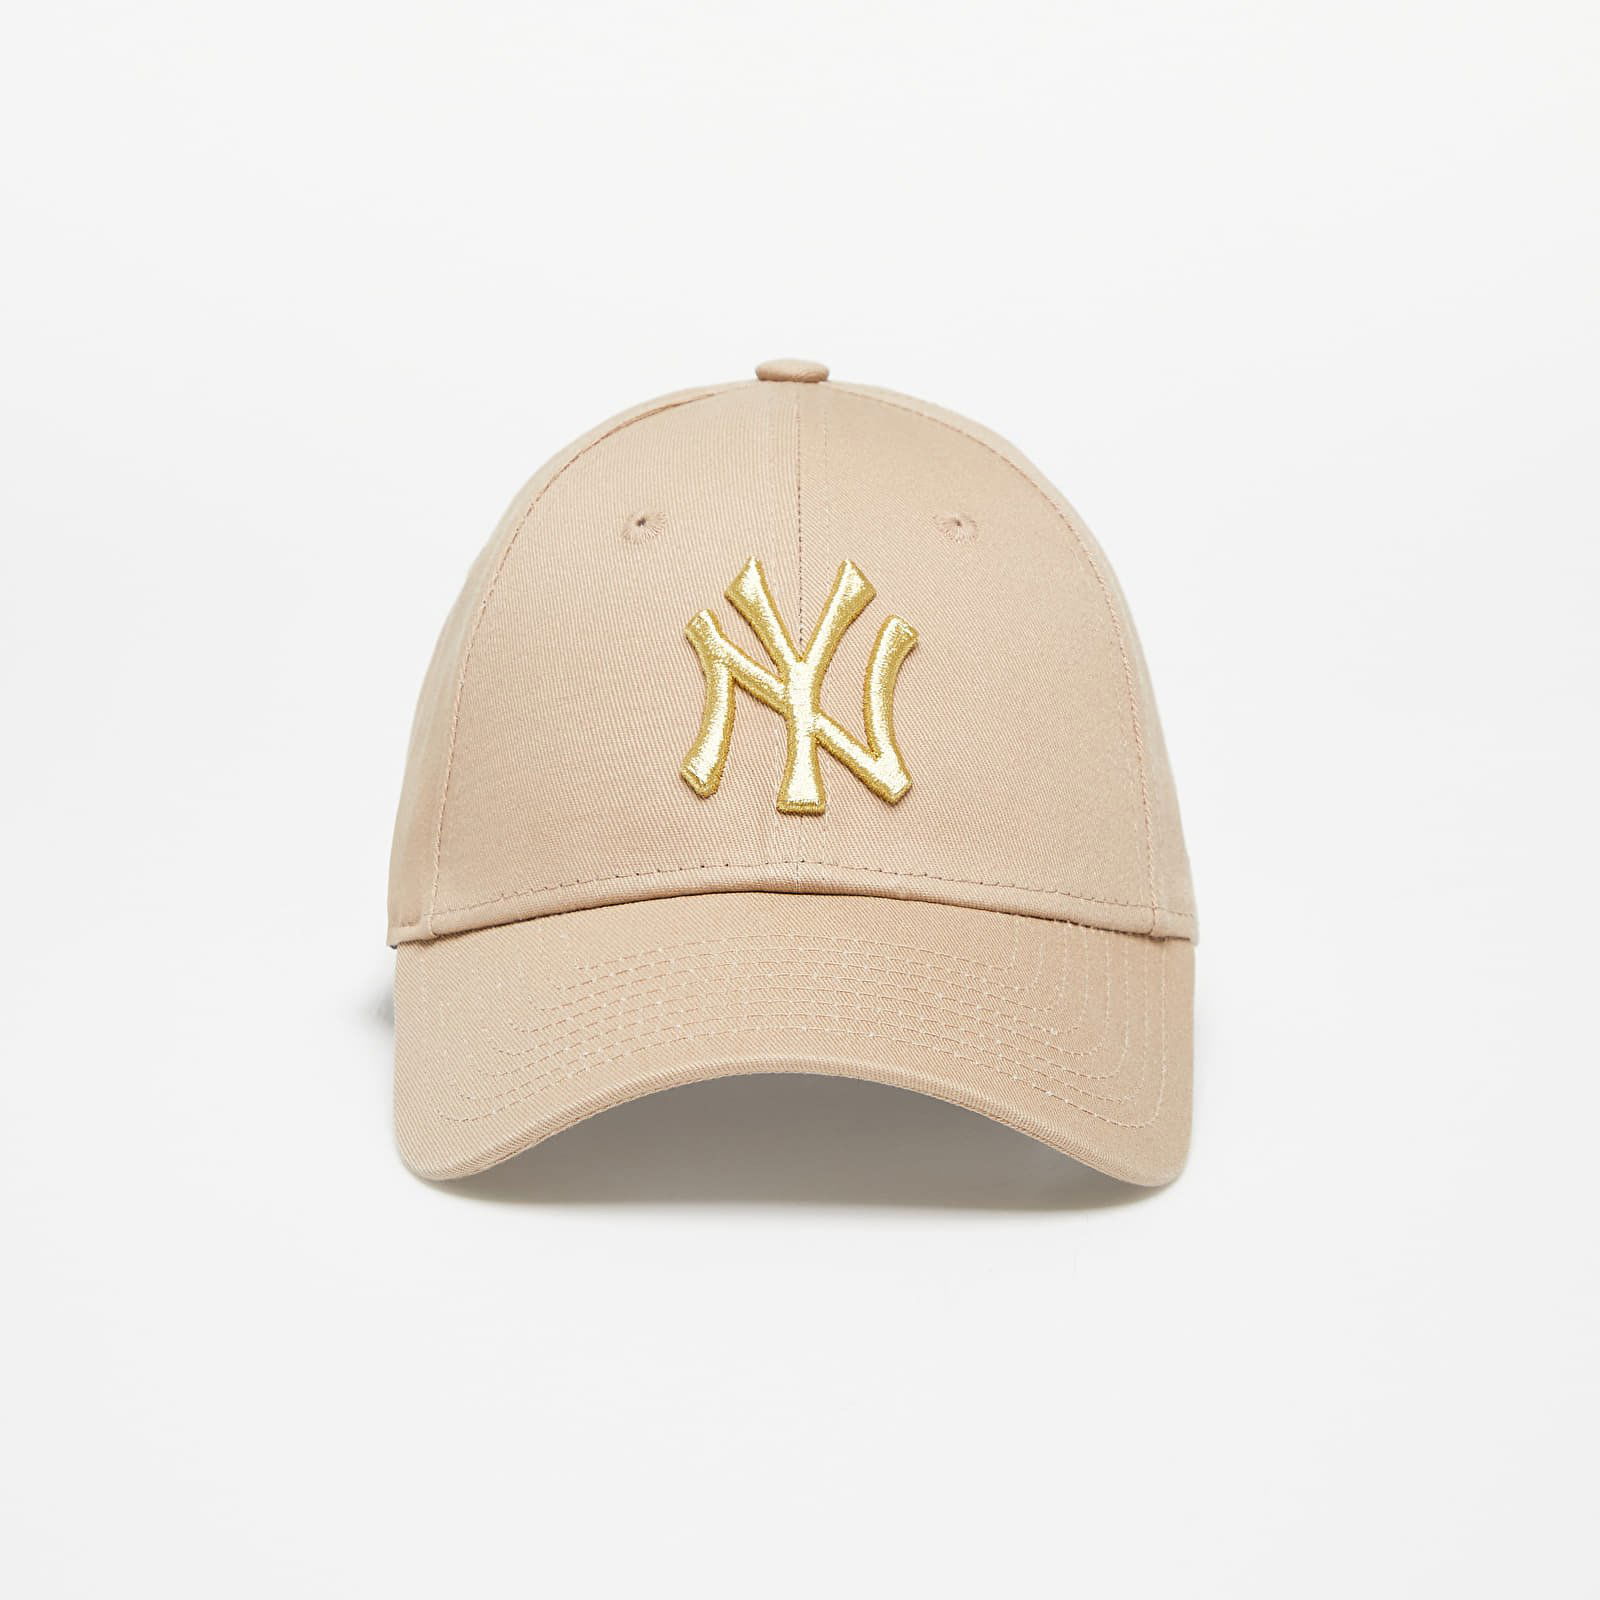 Caps - New Era Metallic Badge 940 New York Yankees (brown)